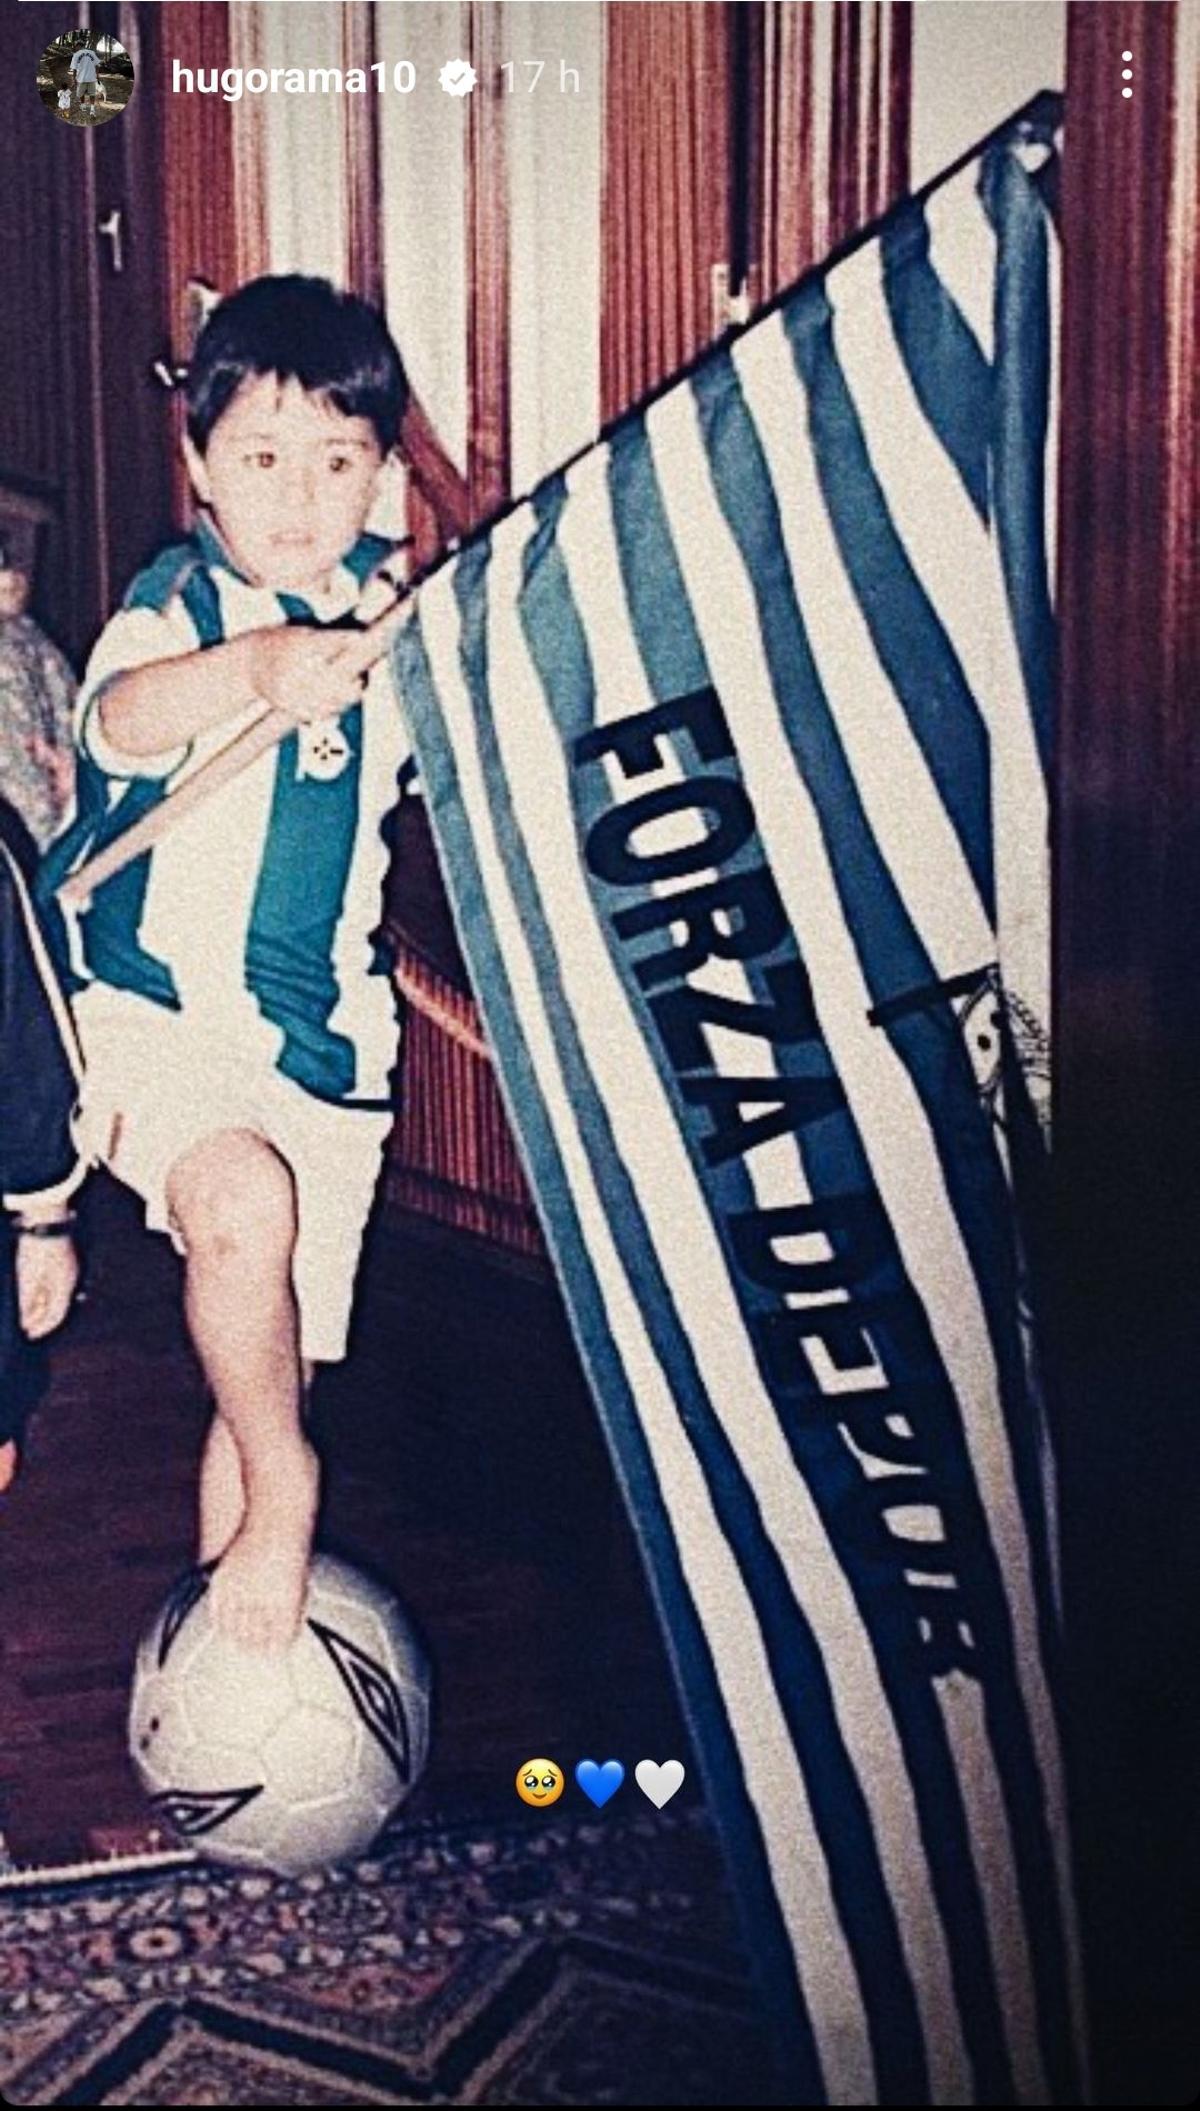 Imagen de Hugo Rama de niño con la equipación del Deportivo que ha compartido en sus redes sociales.